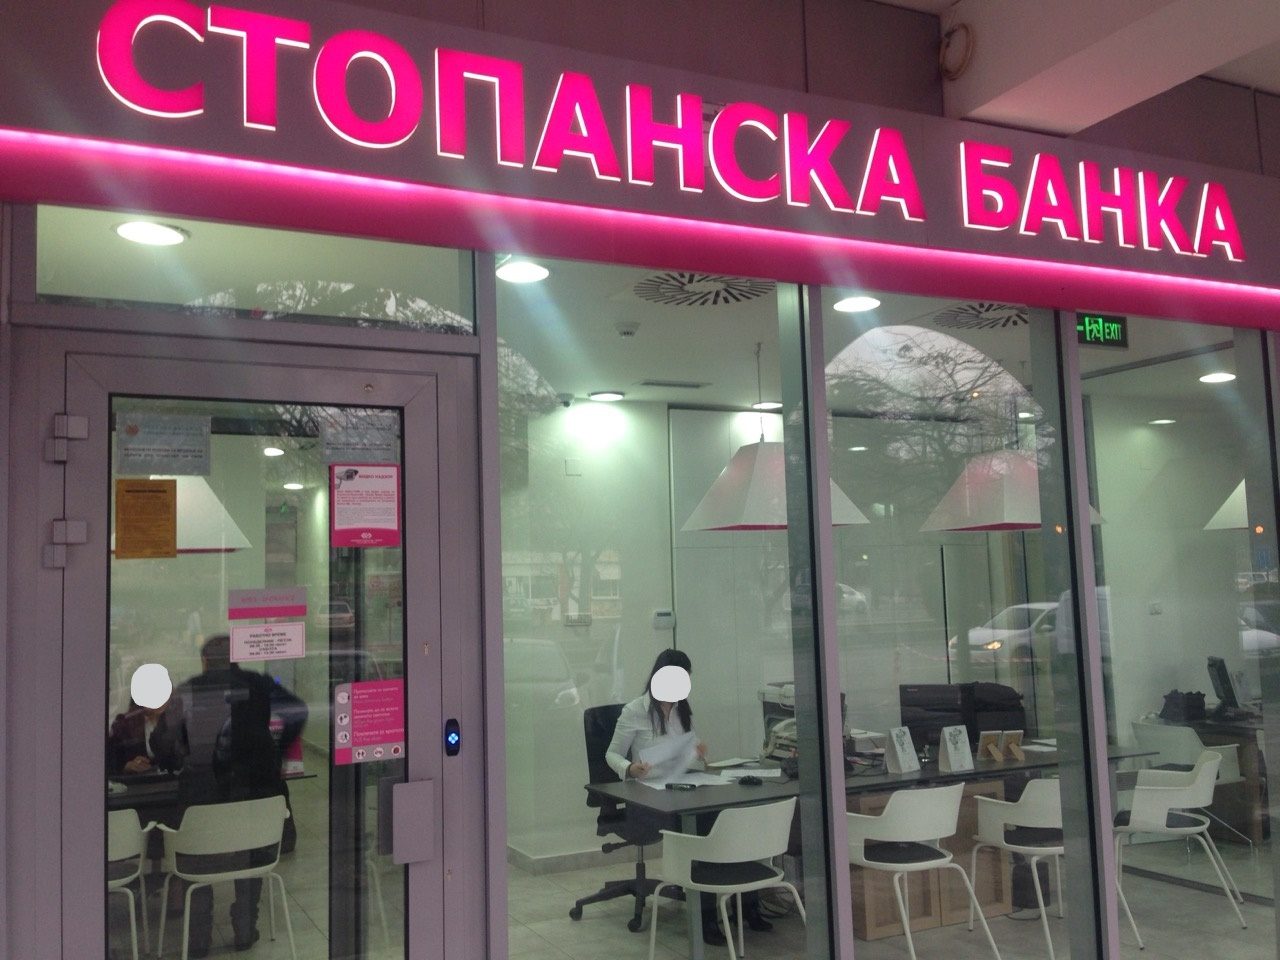 Работната тортура во Стопанска Банка АД Скопје раскажана од вработен благајник